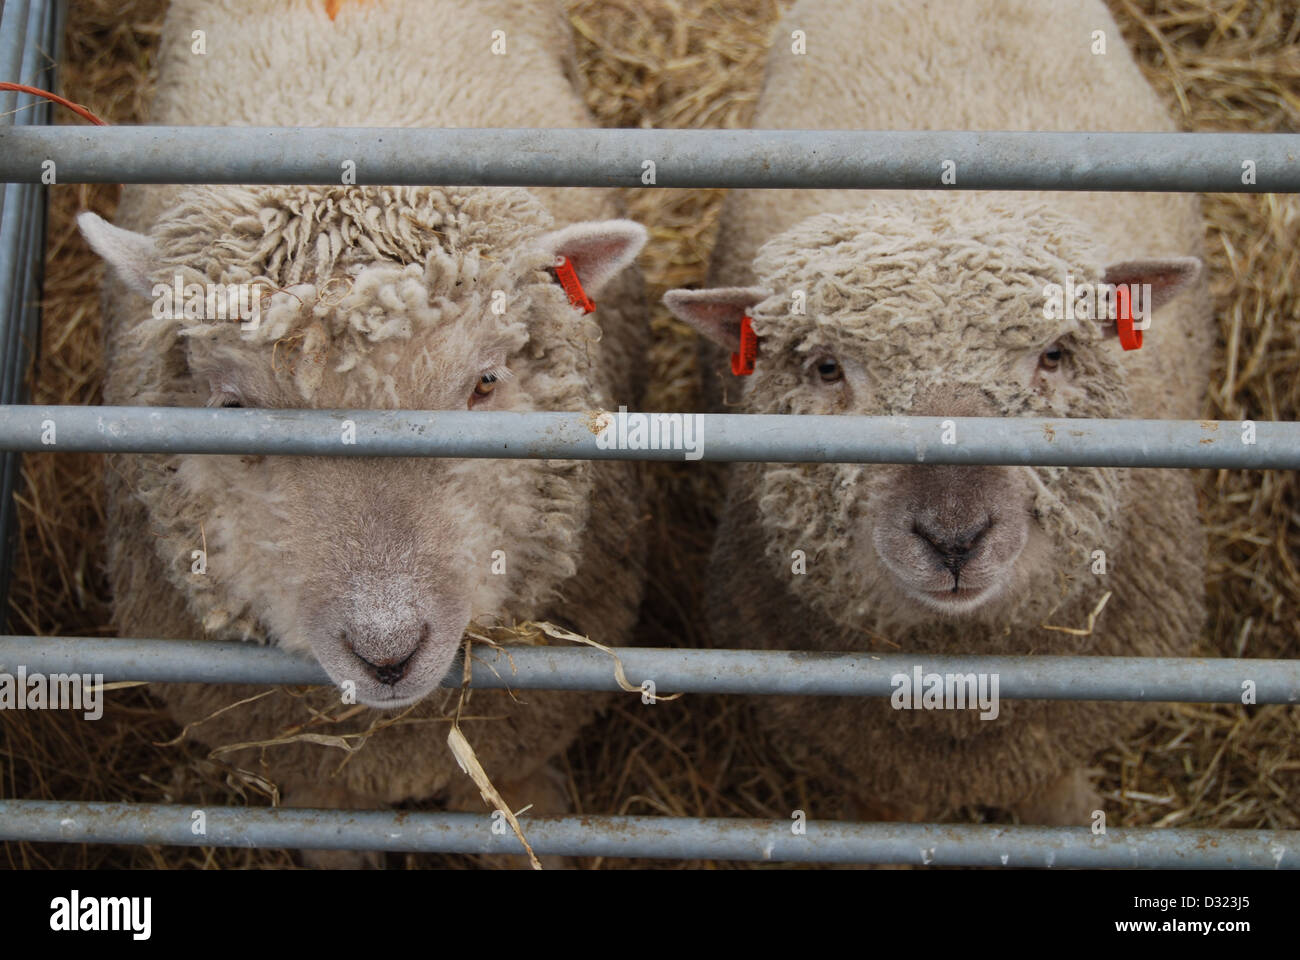 Ein frech neugierig Schaf beißen die Metallschiene des Stiftes an der Kamera in einem Kugelschreiber voller Tiere auf einem Markt Streichelzoo oder Bauernhof Stockfoto